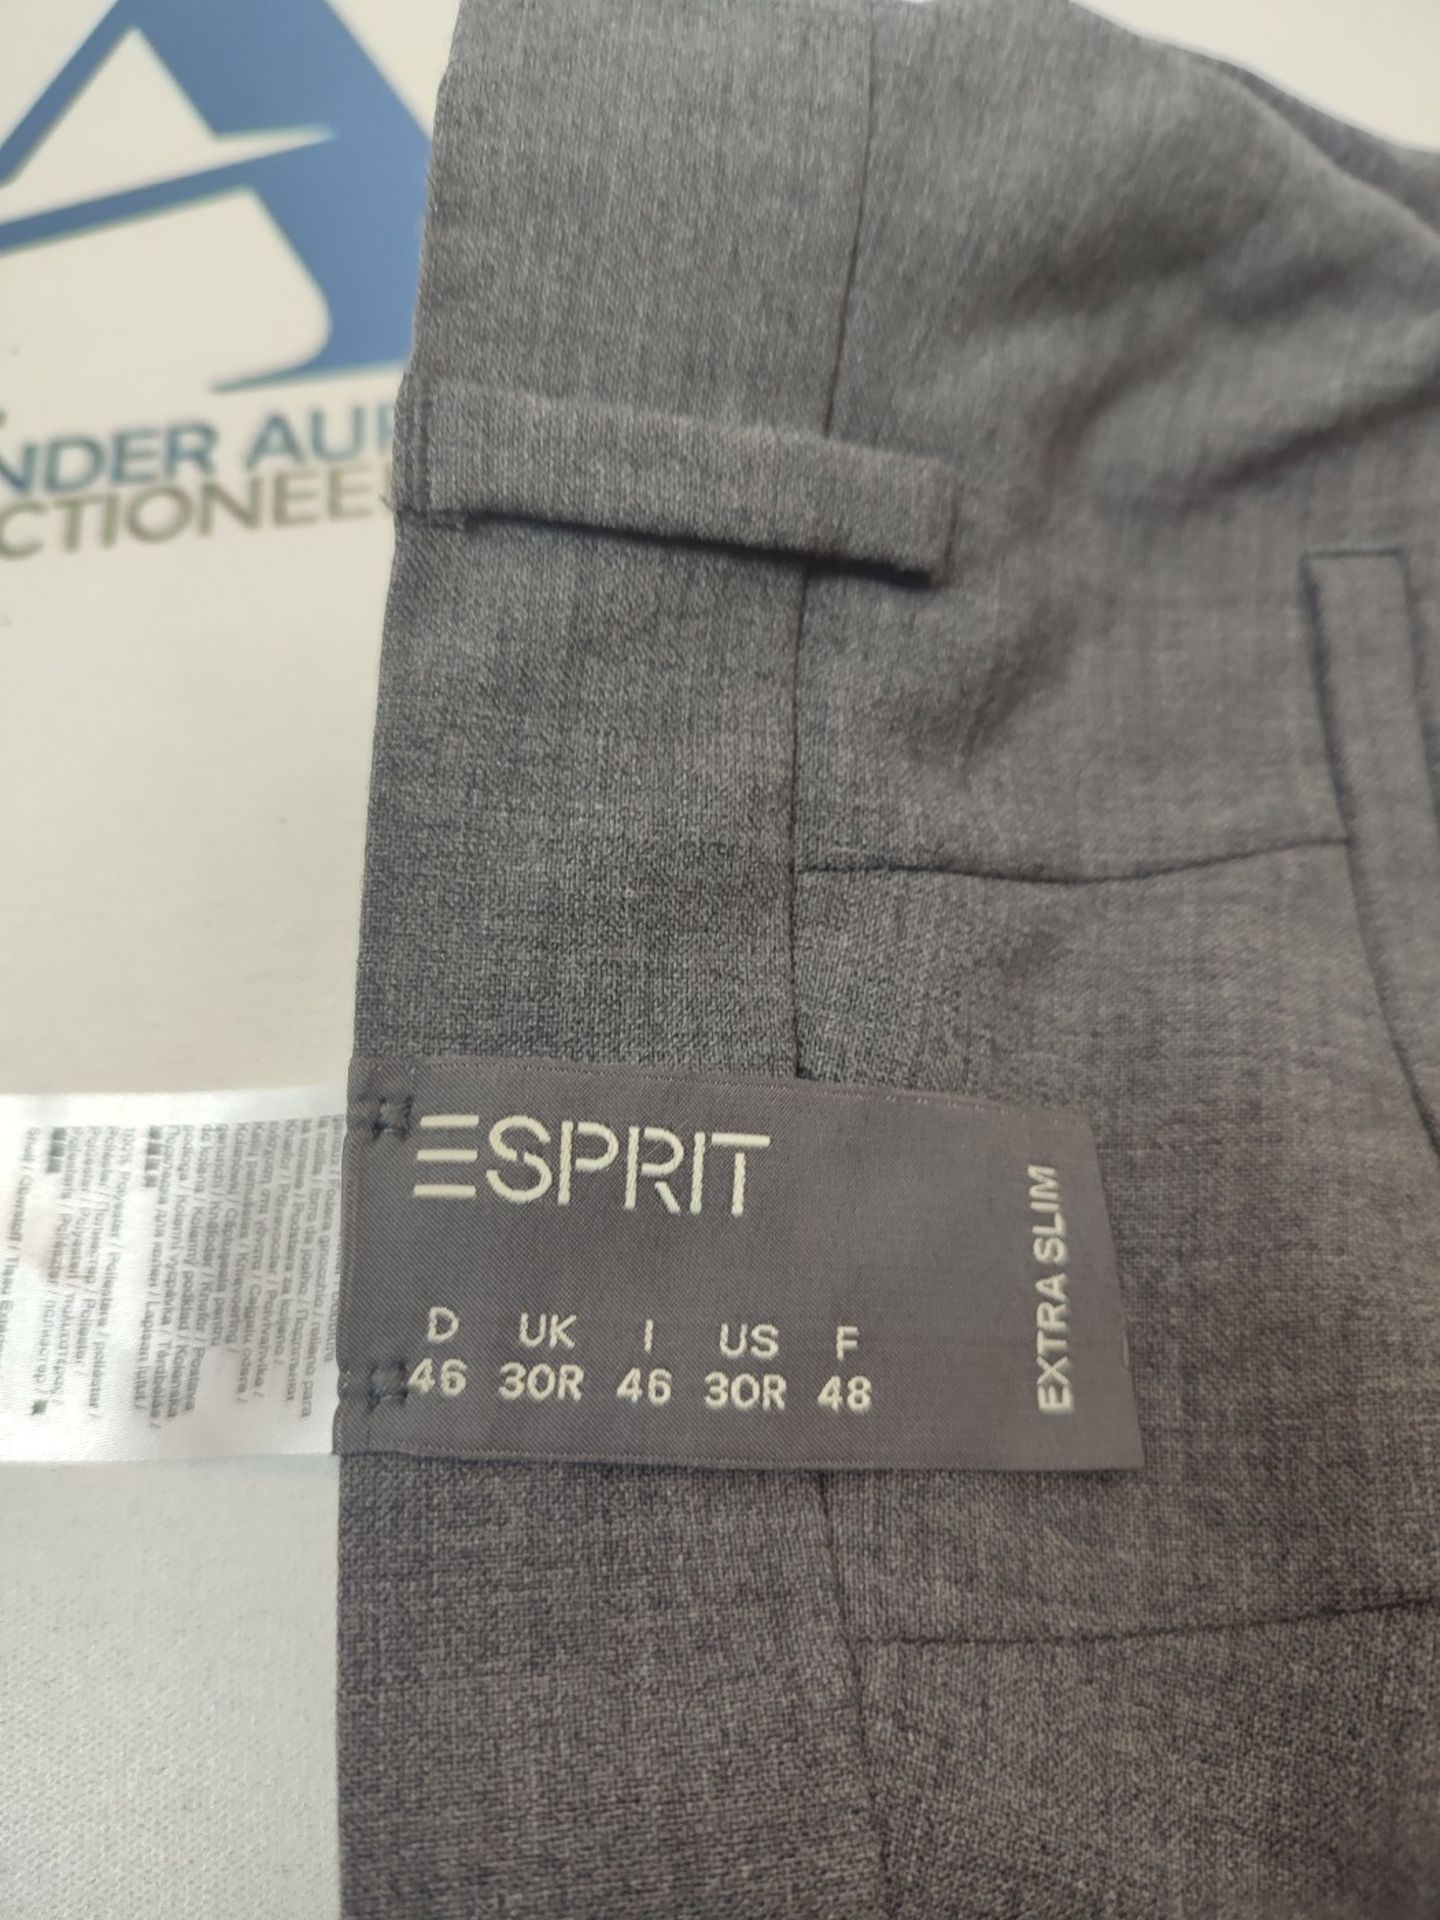 ESPRIT Men's Active Suit Trousers, Grey (Dark Grey), 46 - Image 3 of 3